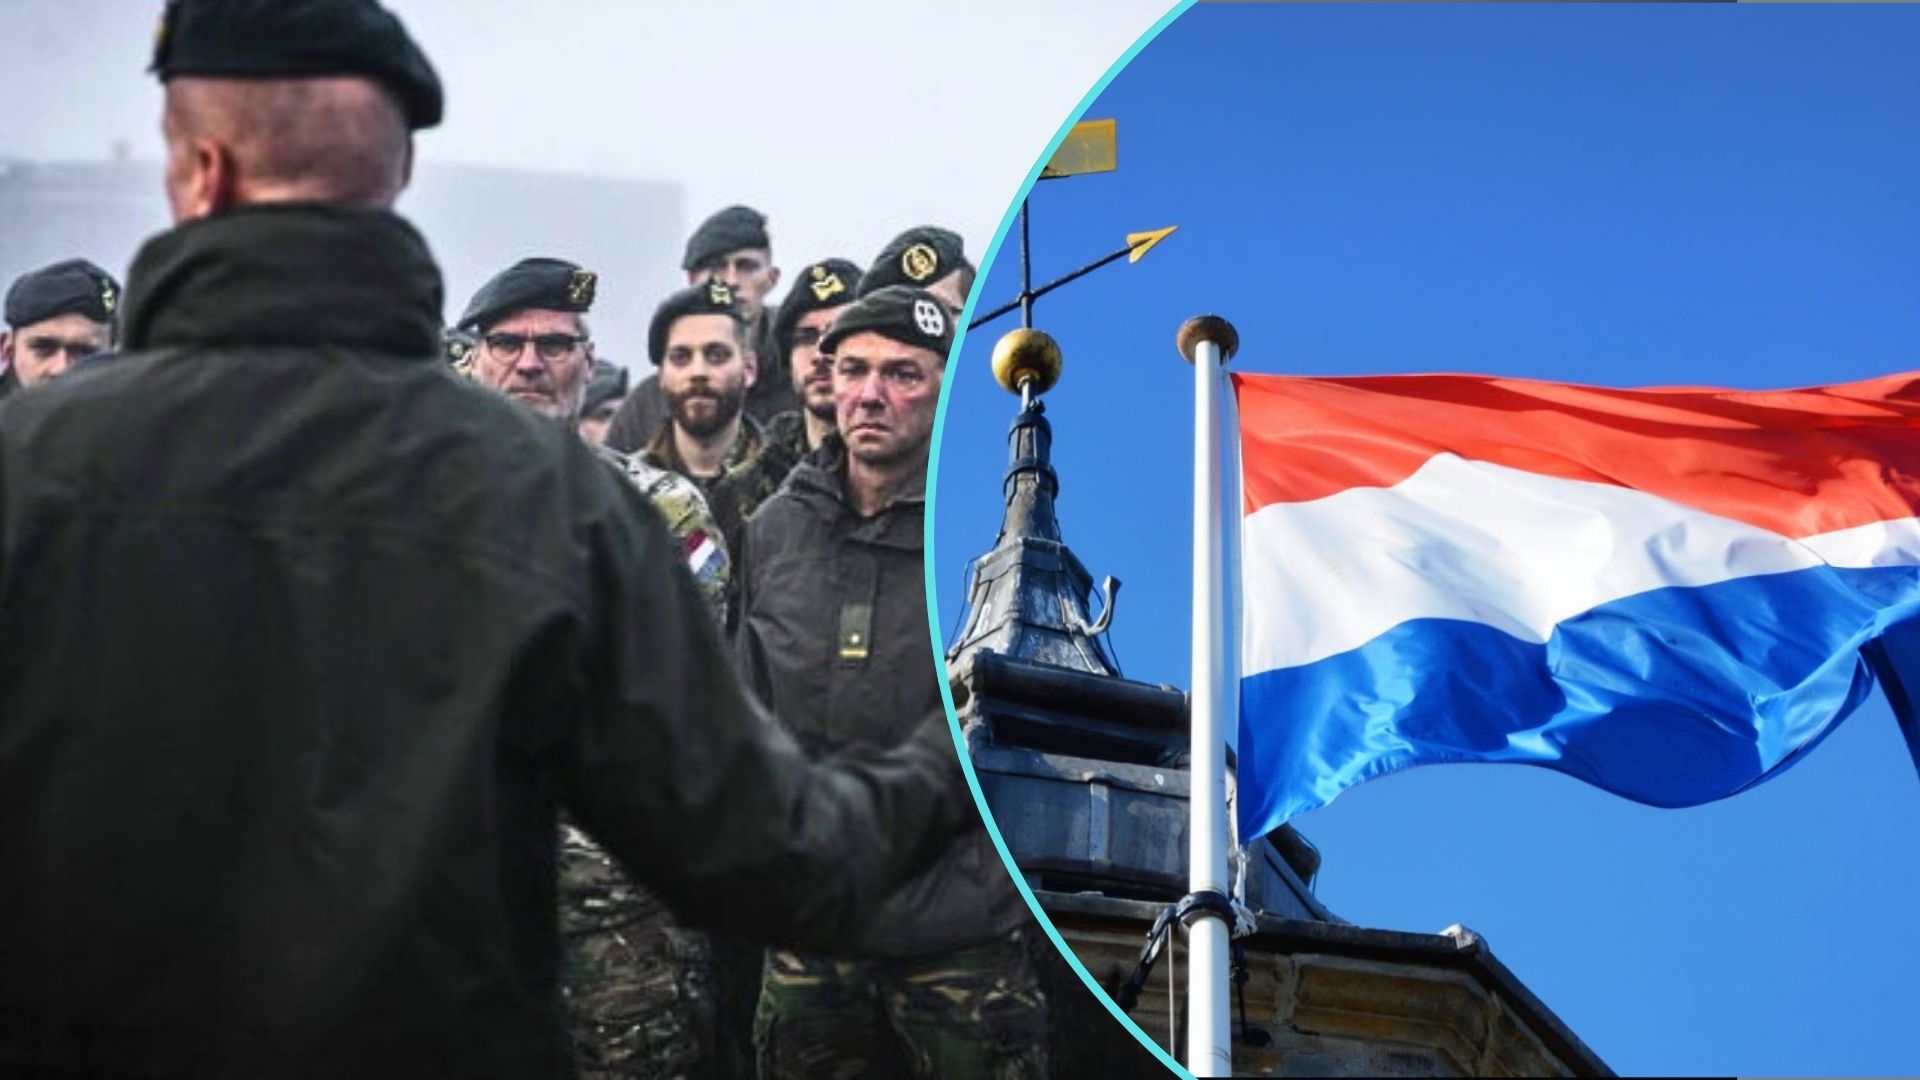 Головнокомандувач армії Королівства Нідерландів генерал Мартін Війнен заявив, що нідерландцям потрібно бути готовими до того, що, ймовірно, коли-небудь доведеться воювати з Росією.